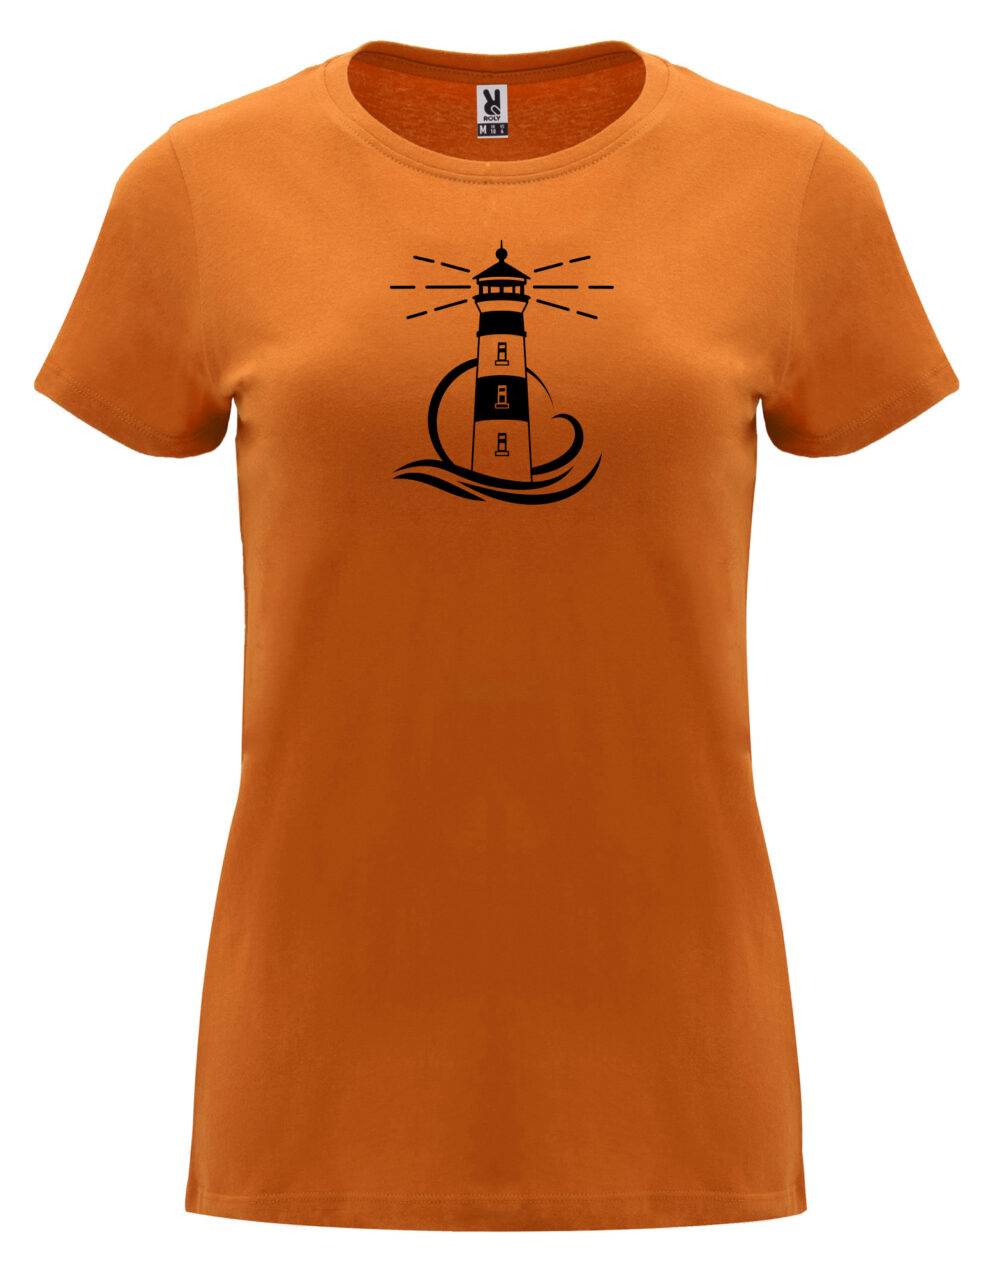 Dámské tričko s potiskem Maják oranžová